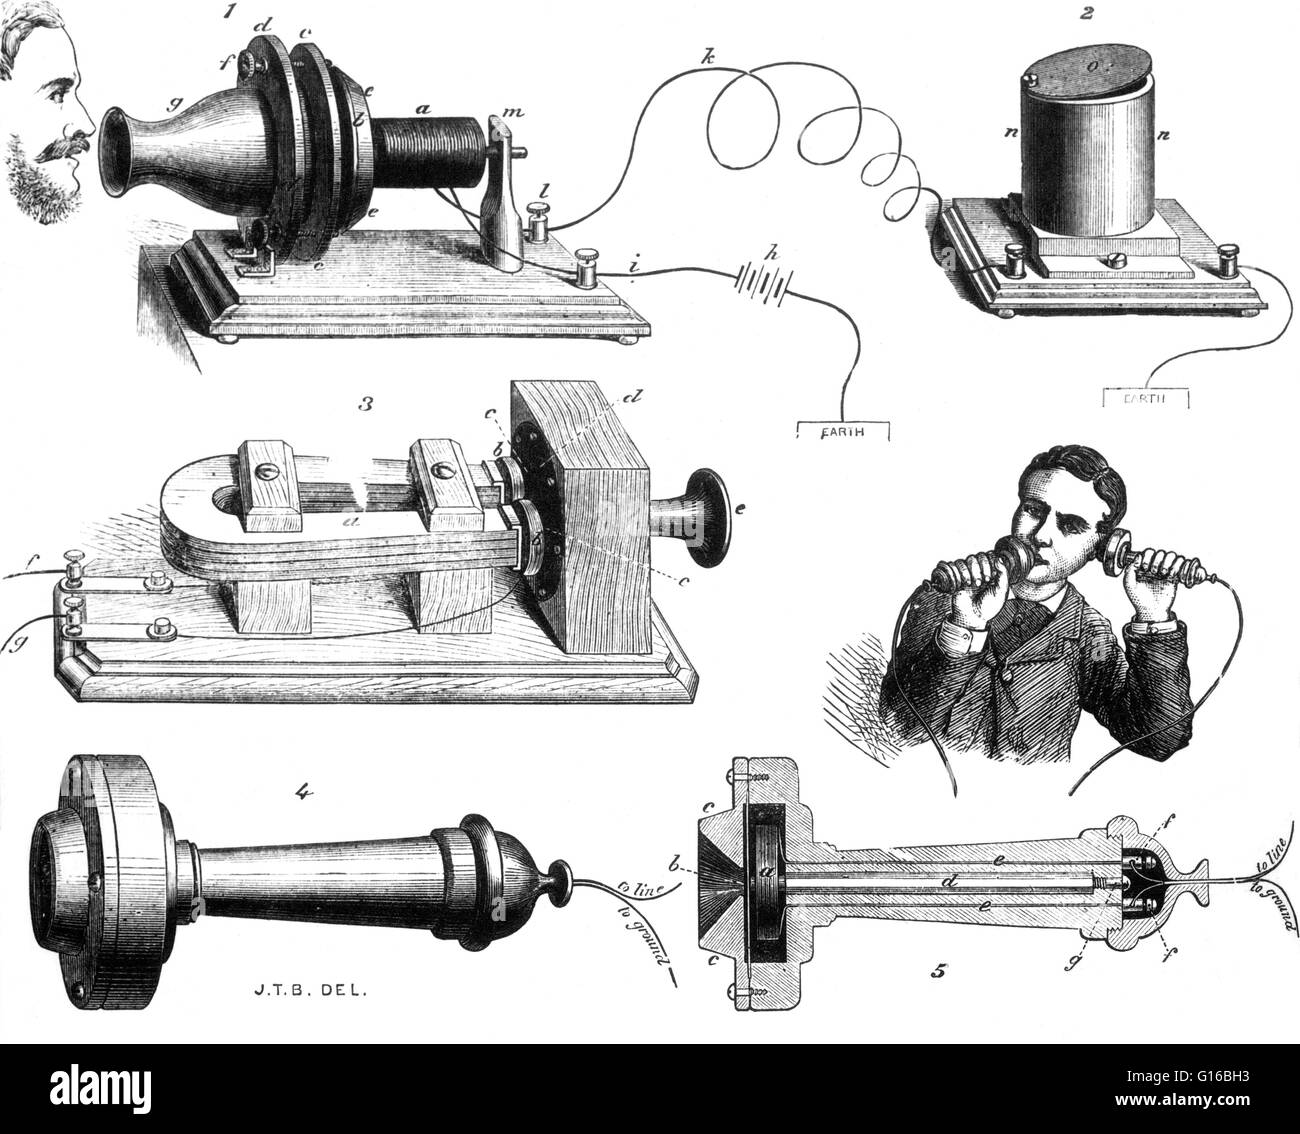 Schema della campana del sistema telefonico che è apparso in Illustrated London News, 1877. Alexander Graham Bell è comunemente accreditato come inventore del primo pratico telefono. Egli è stato il primo ad ottenere un brevetto, nel 1876, per un' apparecchiatura per la trami Foto Stock